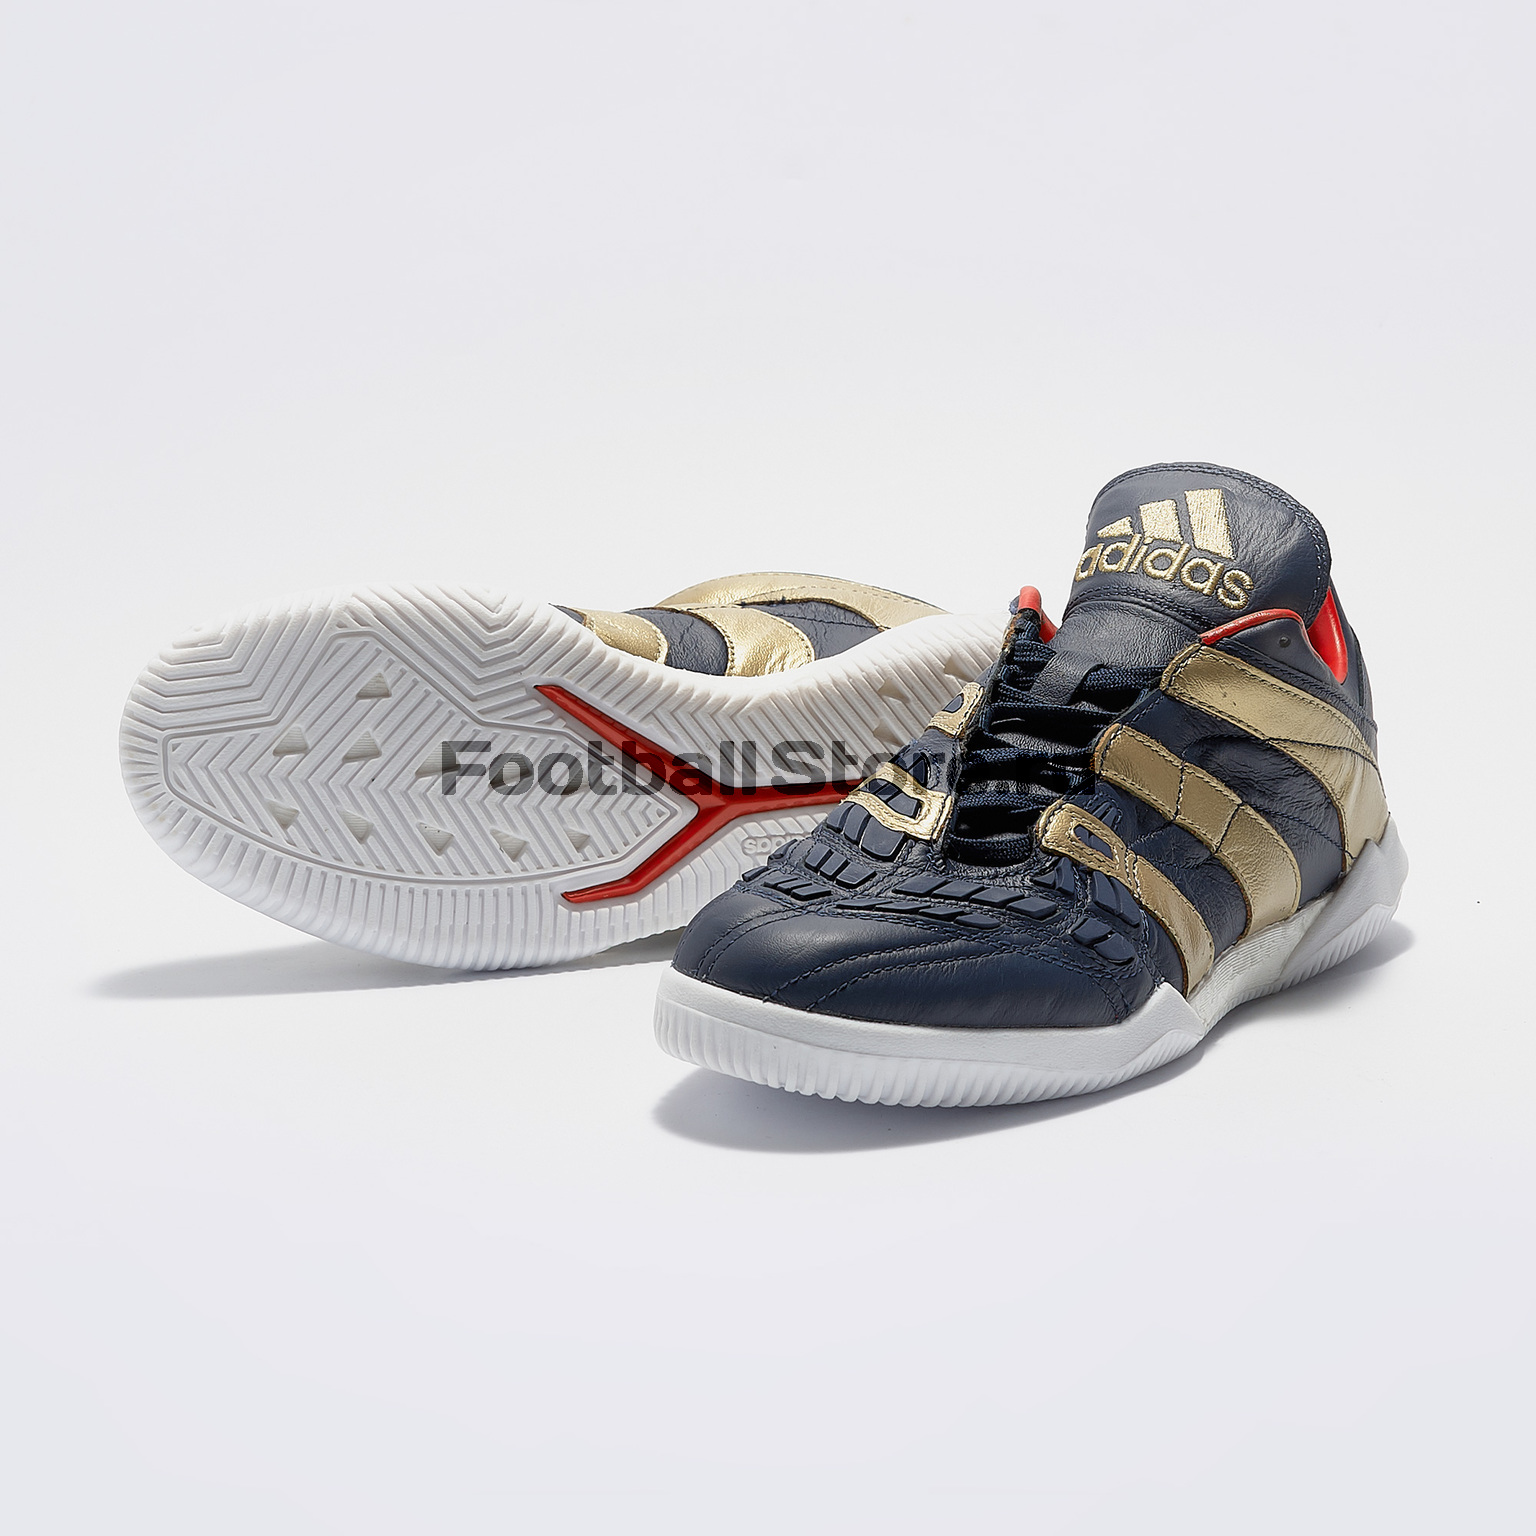 Футбольная обувь Adidas Predator Accelerator Zinedine Zidane TR F37095